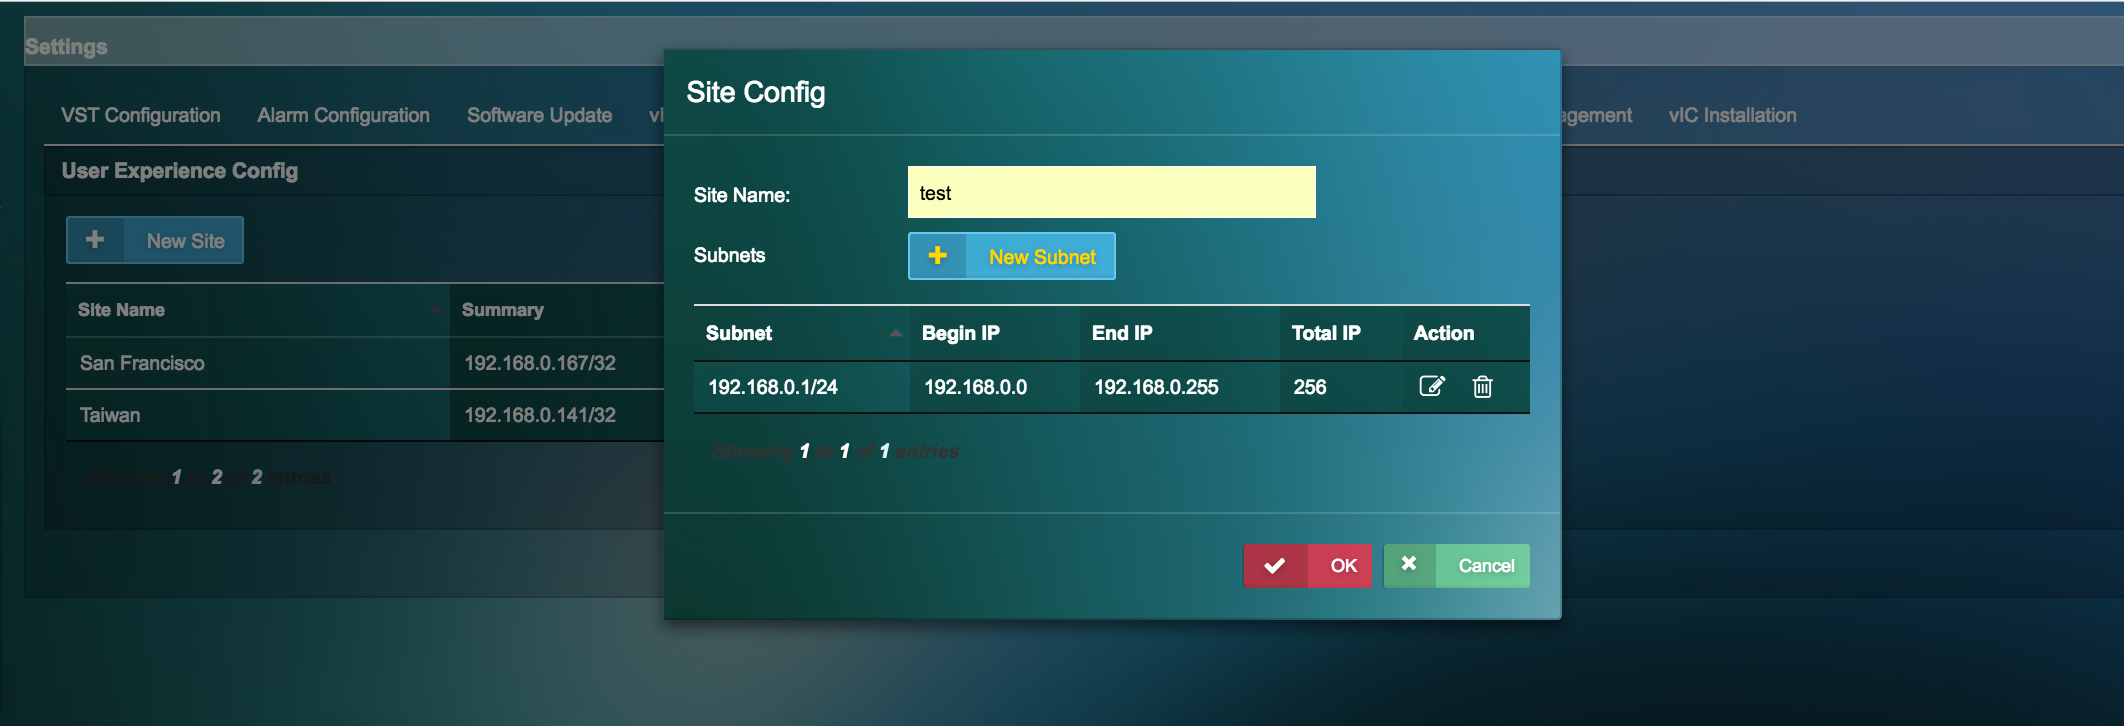 Site Config screenshot